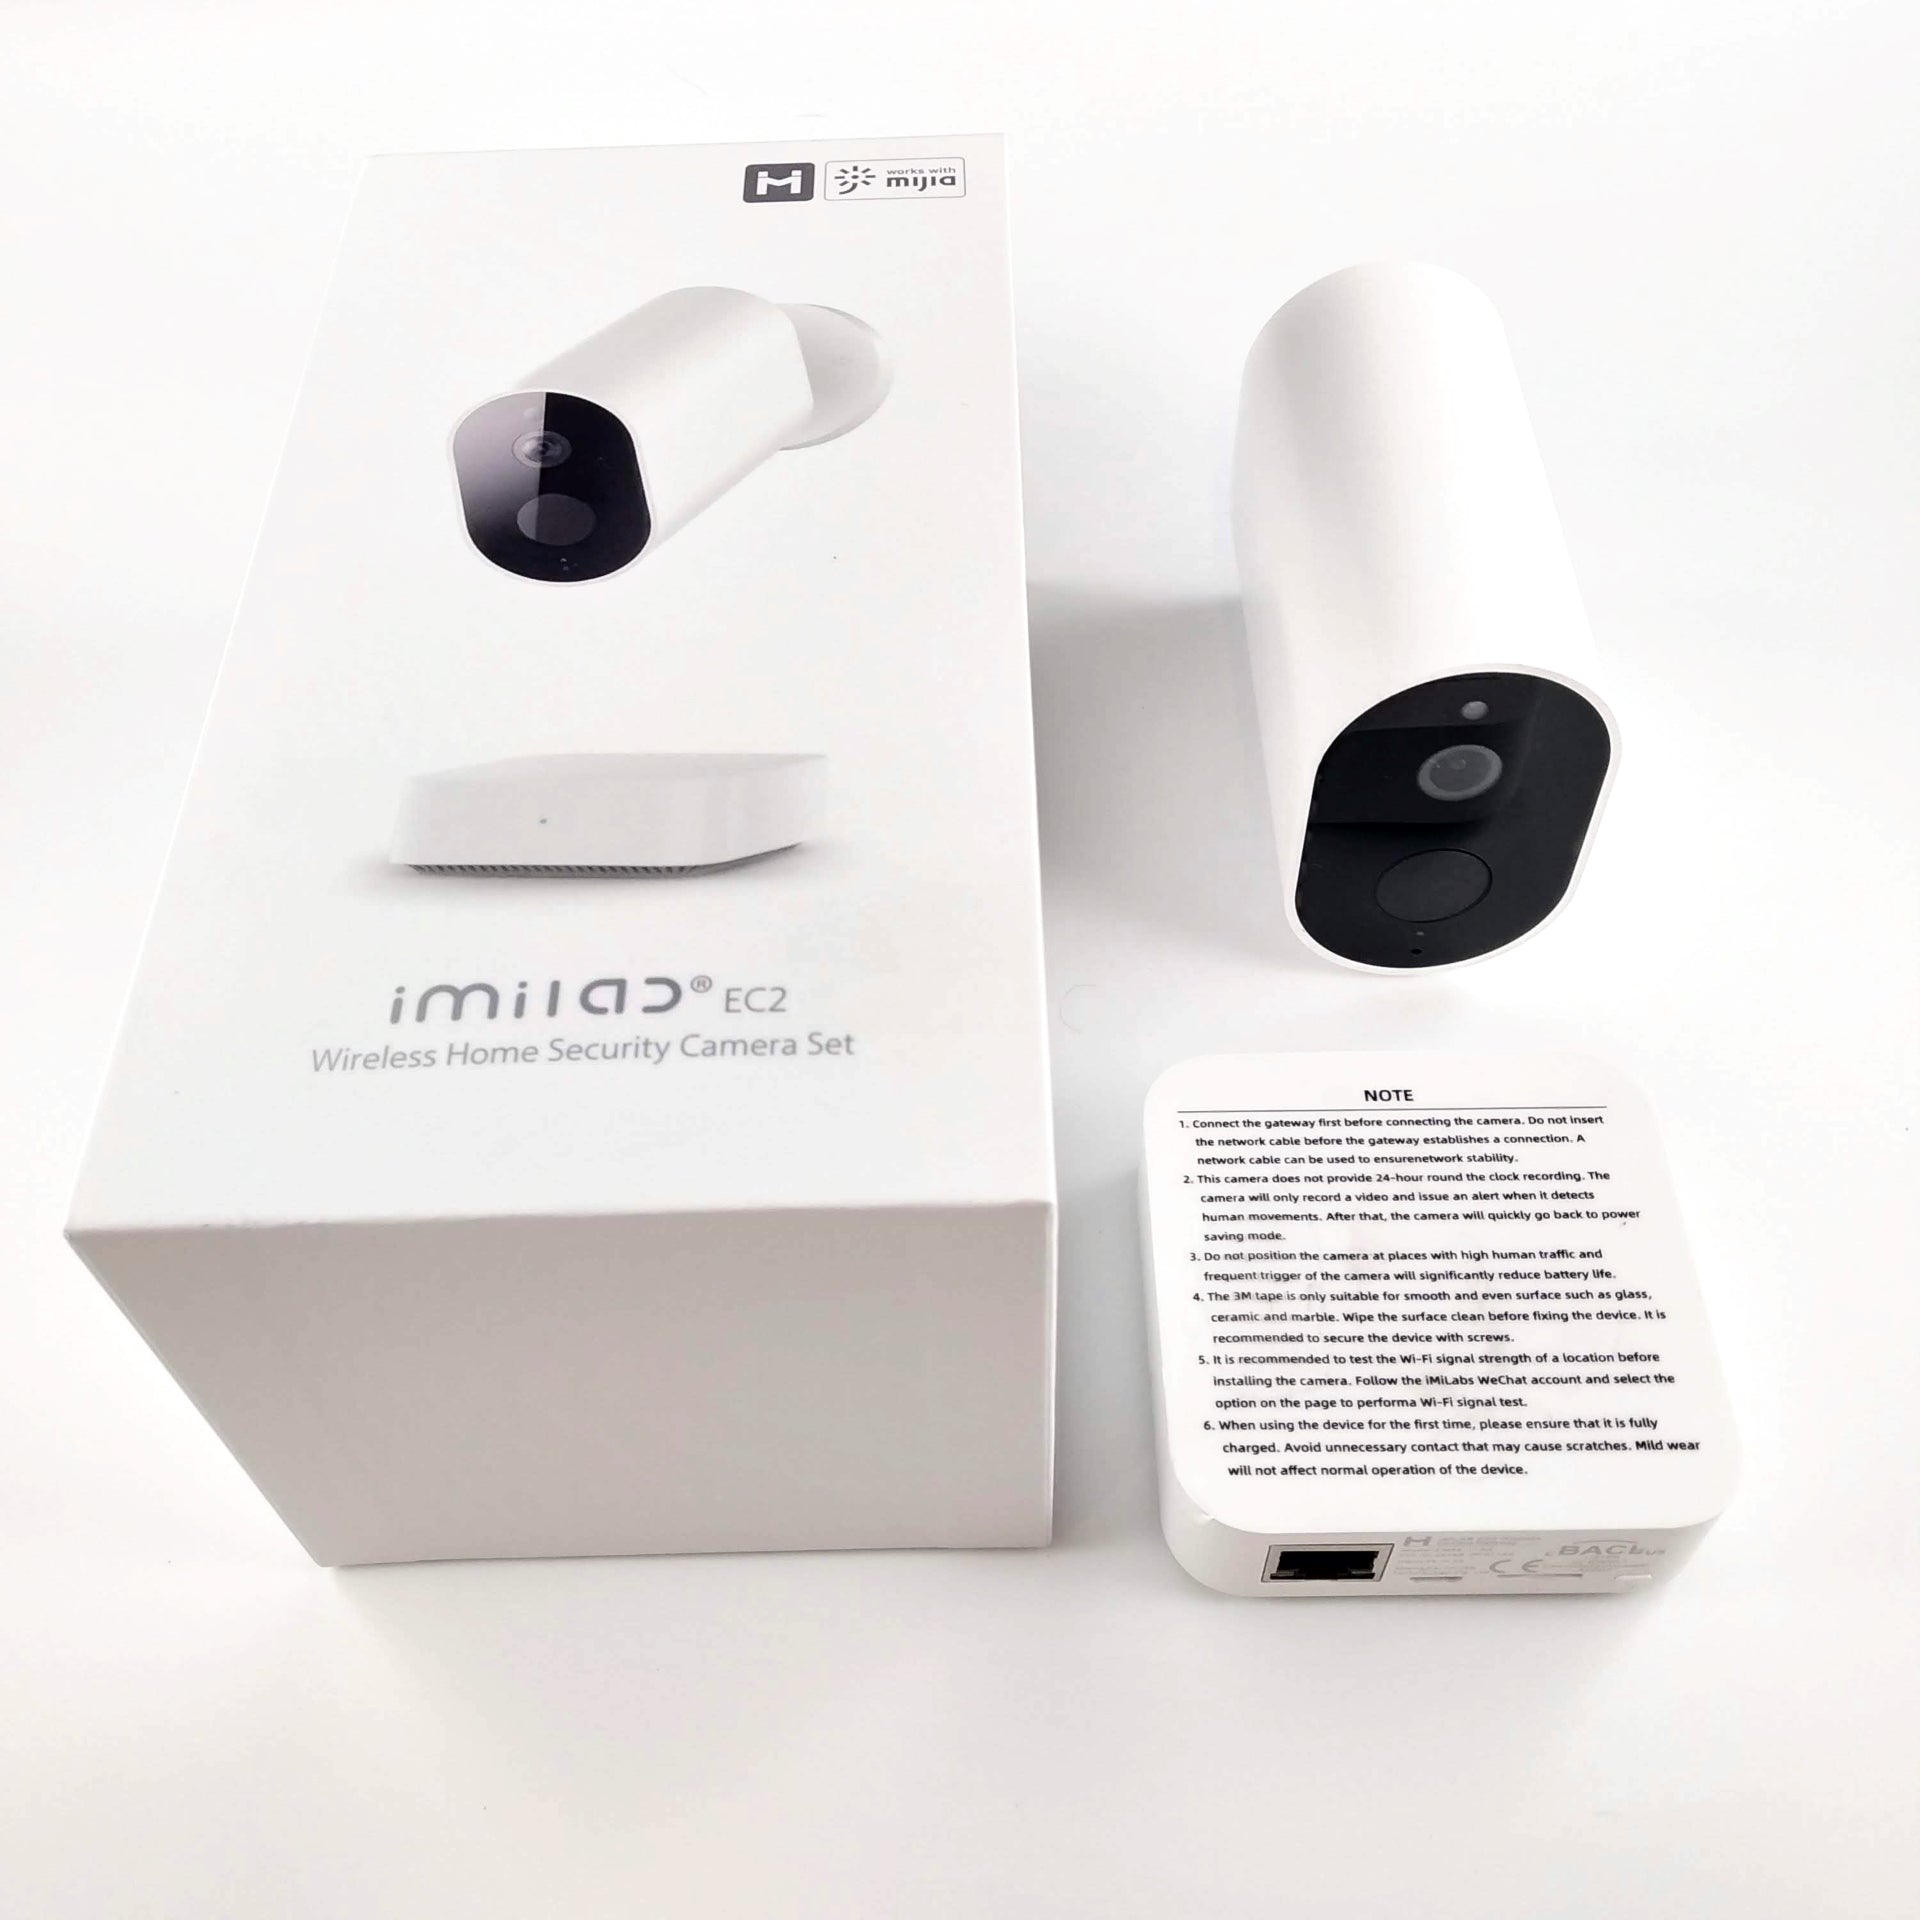 Caméra de vidéosurveillance sans fil, autonome & rechargeable